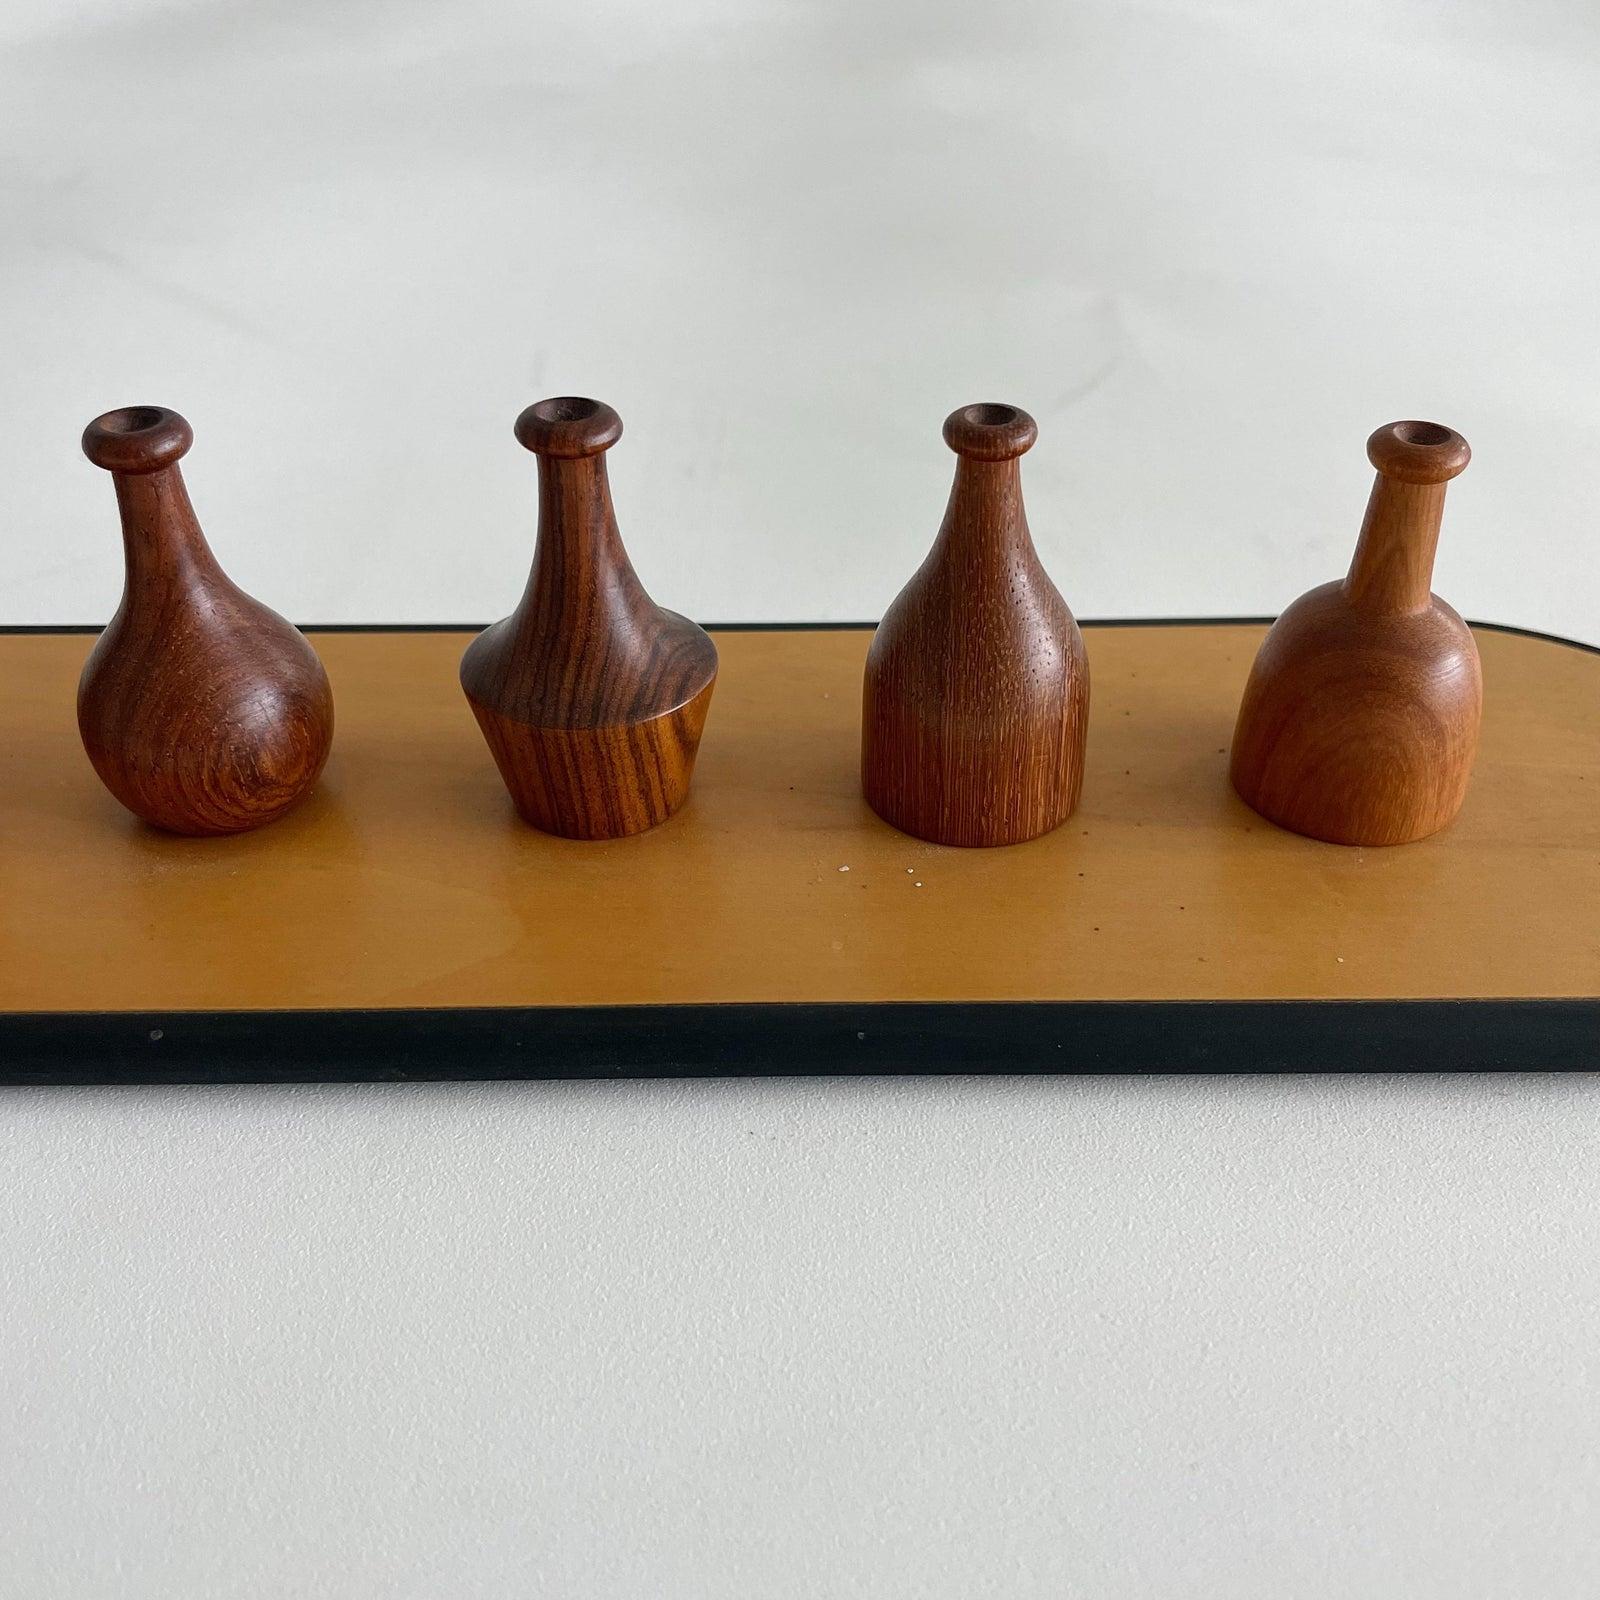 Giorgio Pizzitutti Exotic Wood Miniature Vases Sculpture Italy 1980's 3